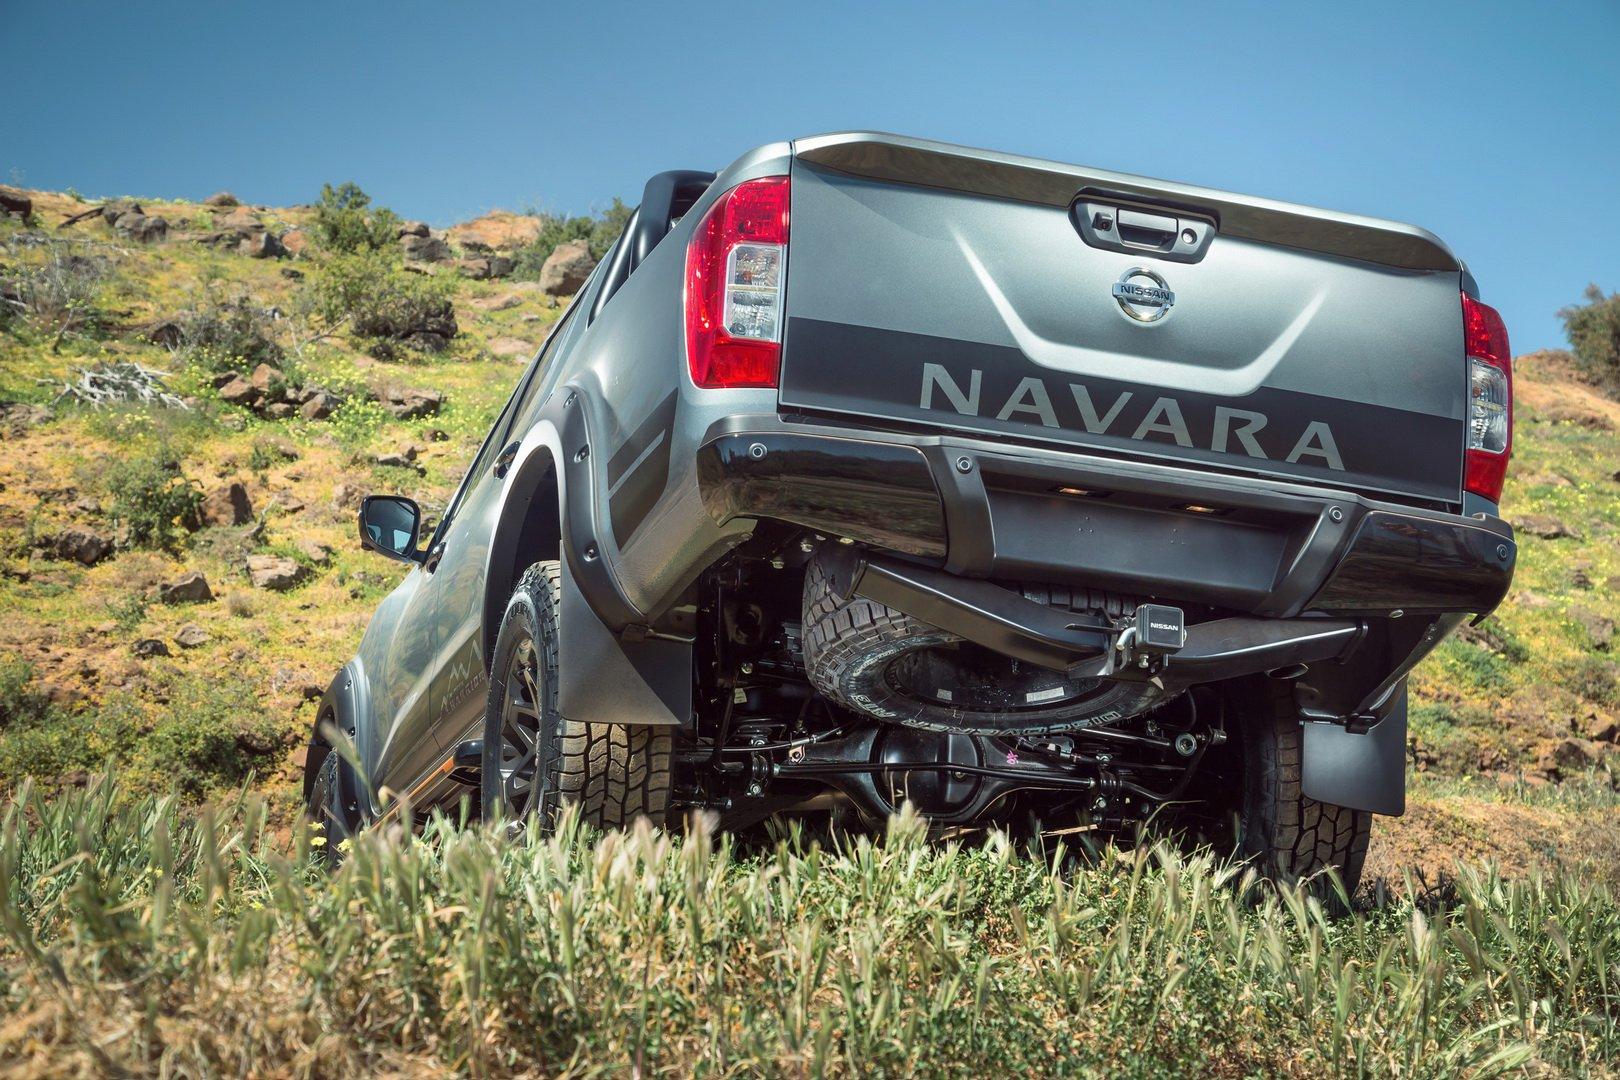 ส่องราคา Nissan Navara N-TREK Warrior 2020 ที่ออสเตรเลีย - ลุ้นเข้าไทยปีนี้